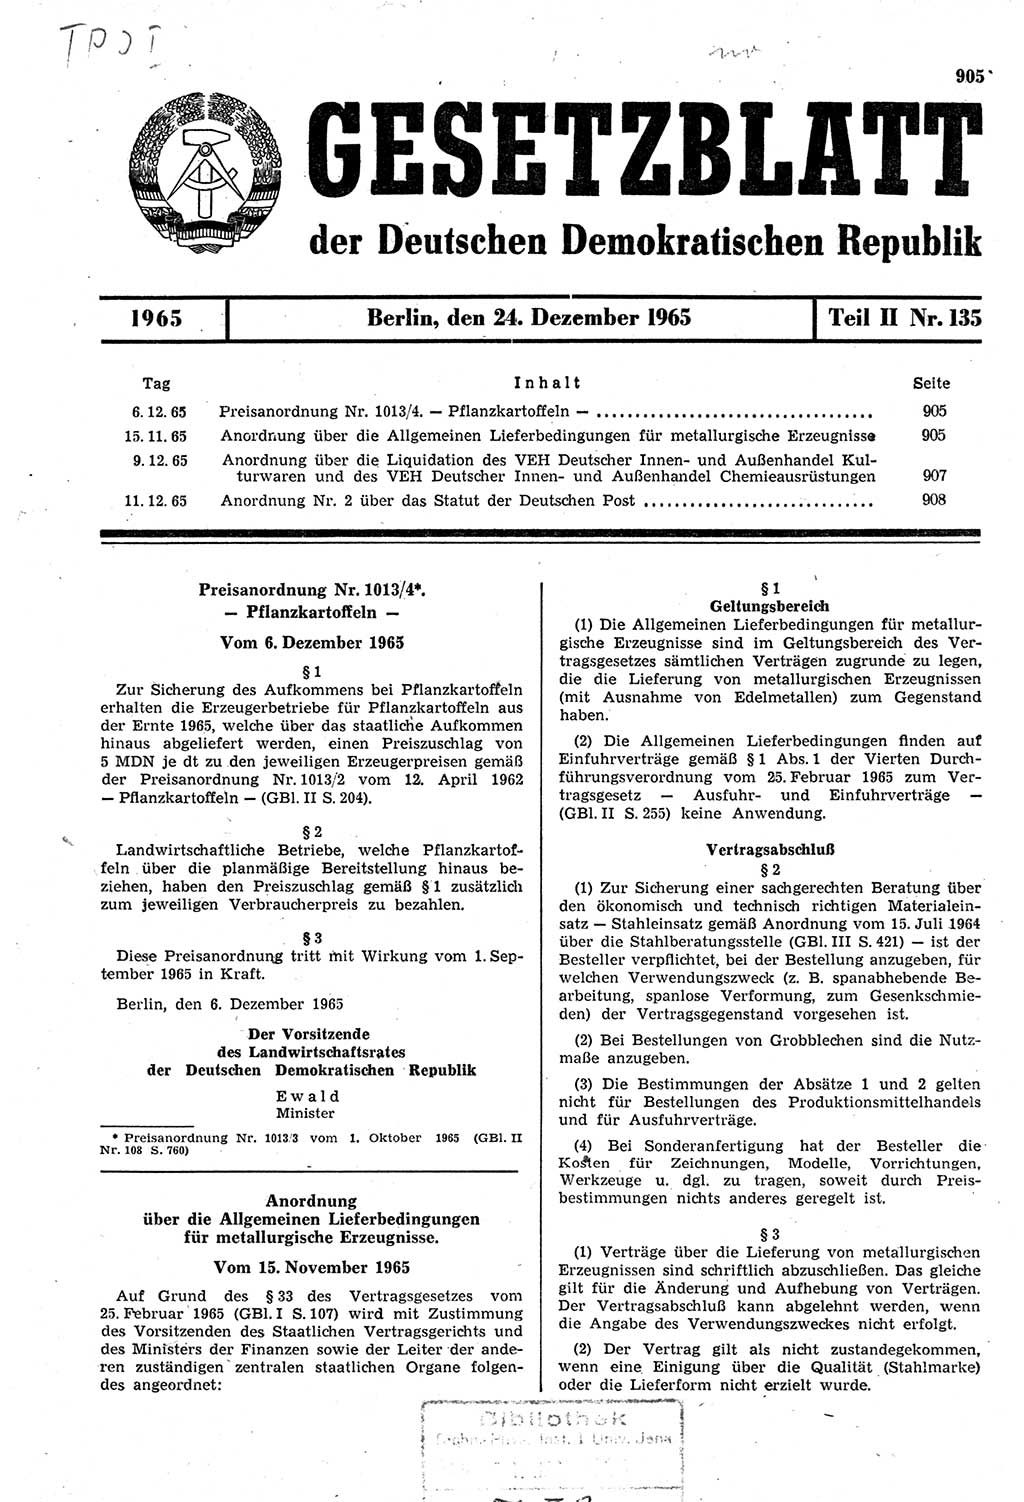 Gesetzblatt (GBl.) der Deutschen Demokratischen Republik (DDR) Teil ⅠⅠ 1965, Seite 905 (GBl. DDR ⅠⅠ 1965, S. 905)